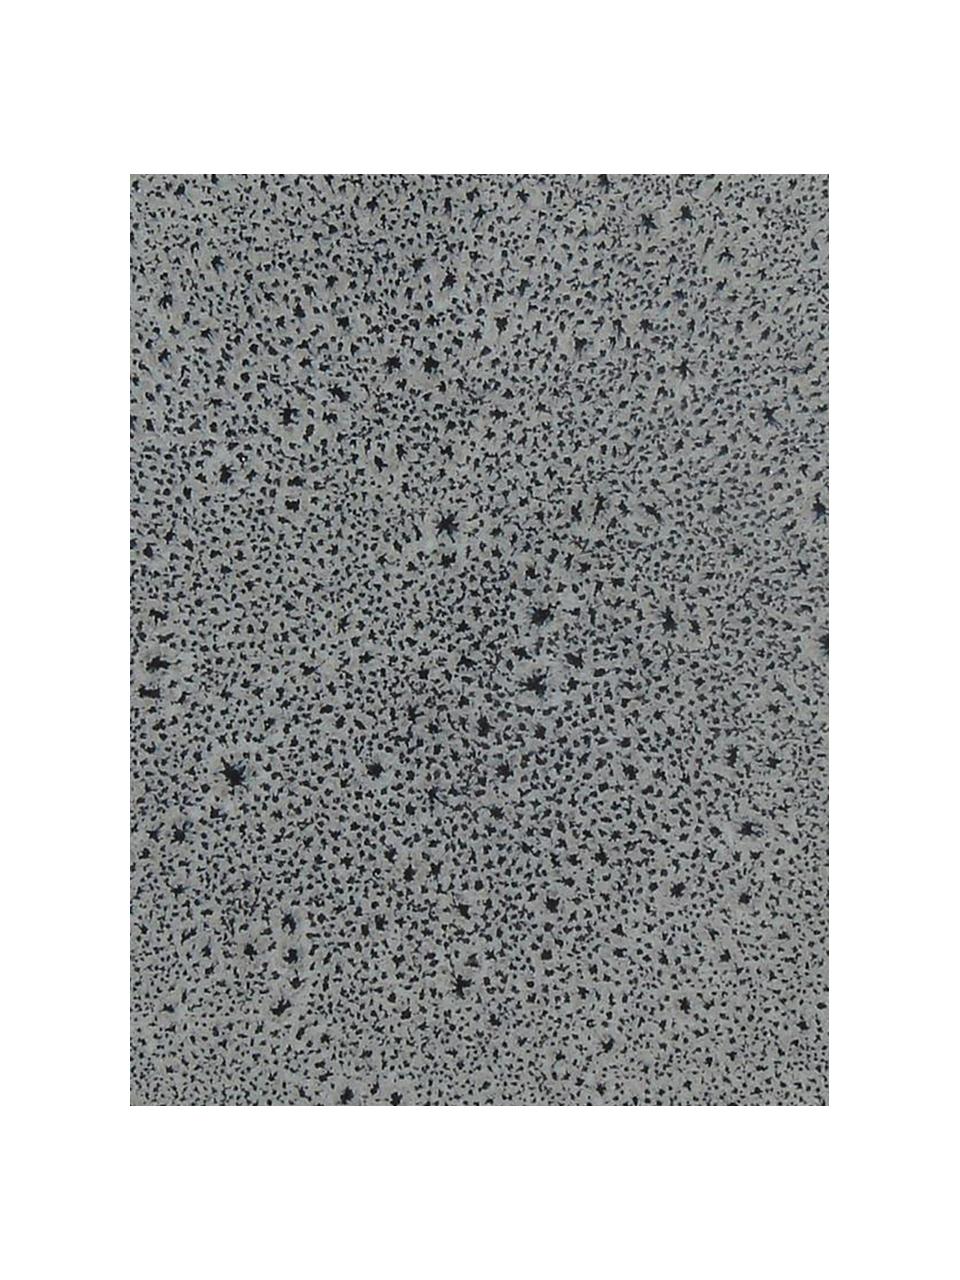 Piatto piano grigio scuro Mirha 4 pz, Terracotta, Grigio scuro, Ø 27 cm